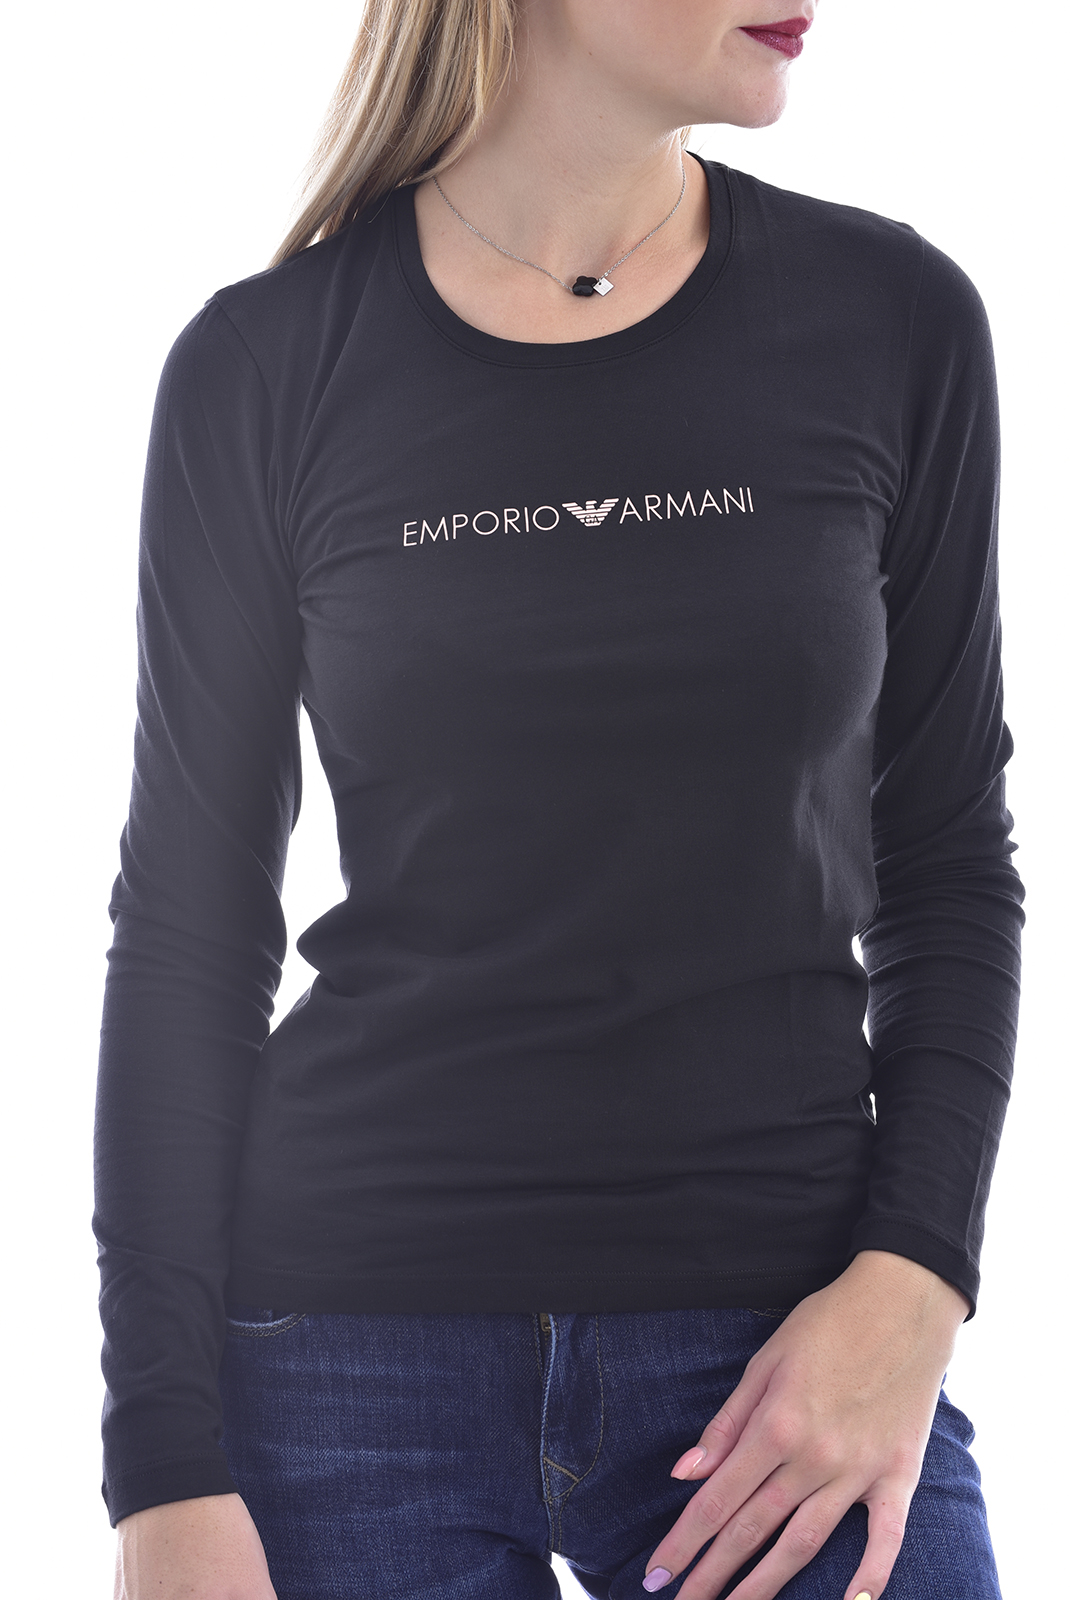 Tee-shirt d'hiver noir à manches longues Emporio Armani - 163229